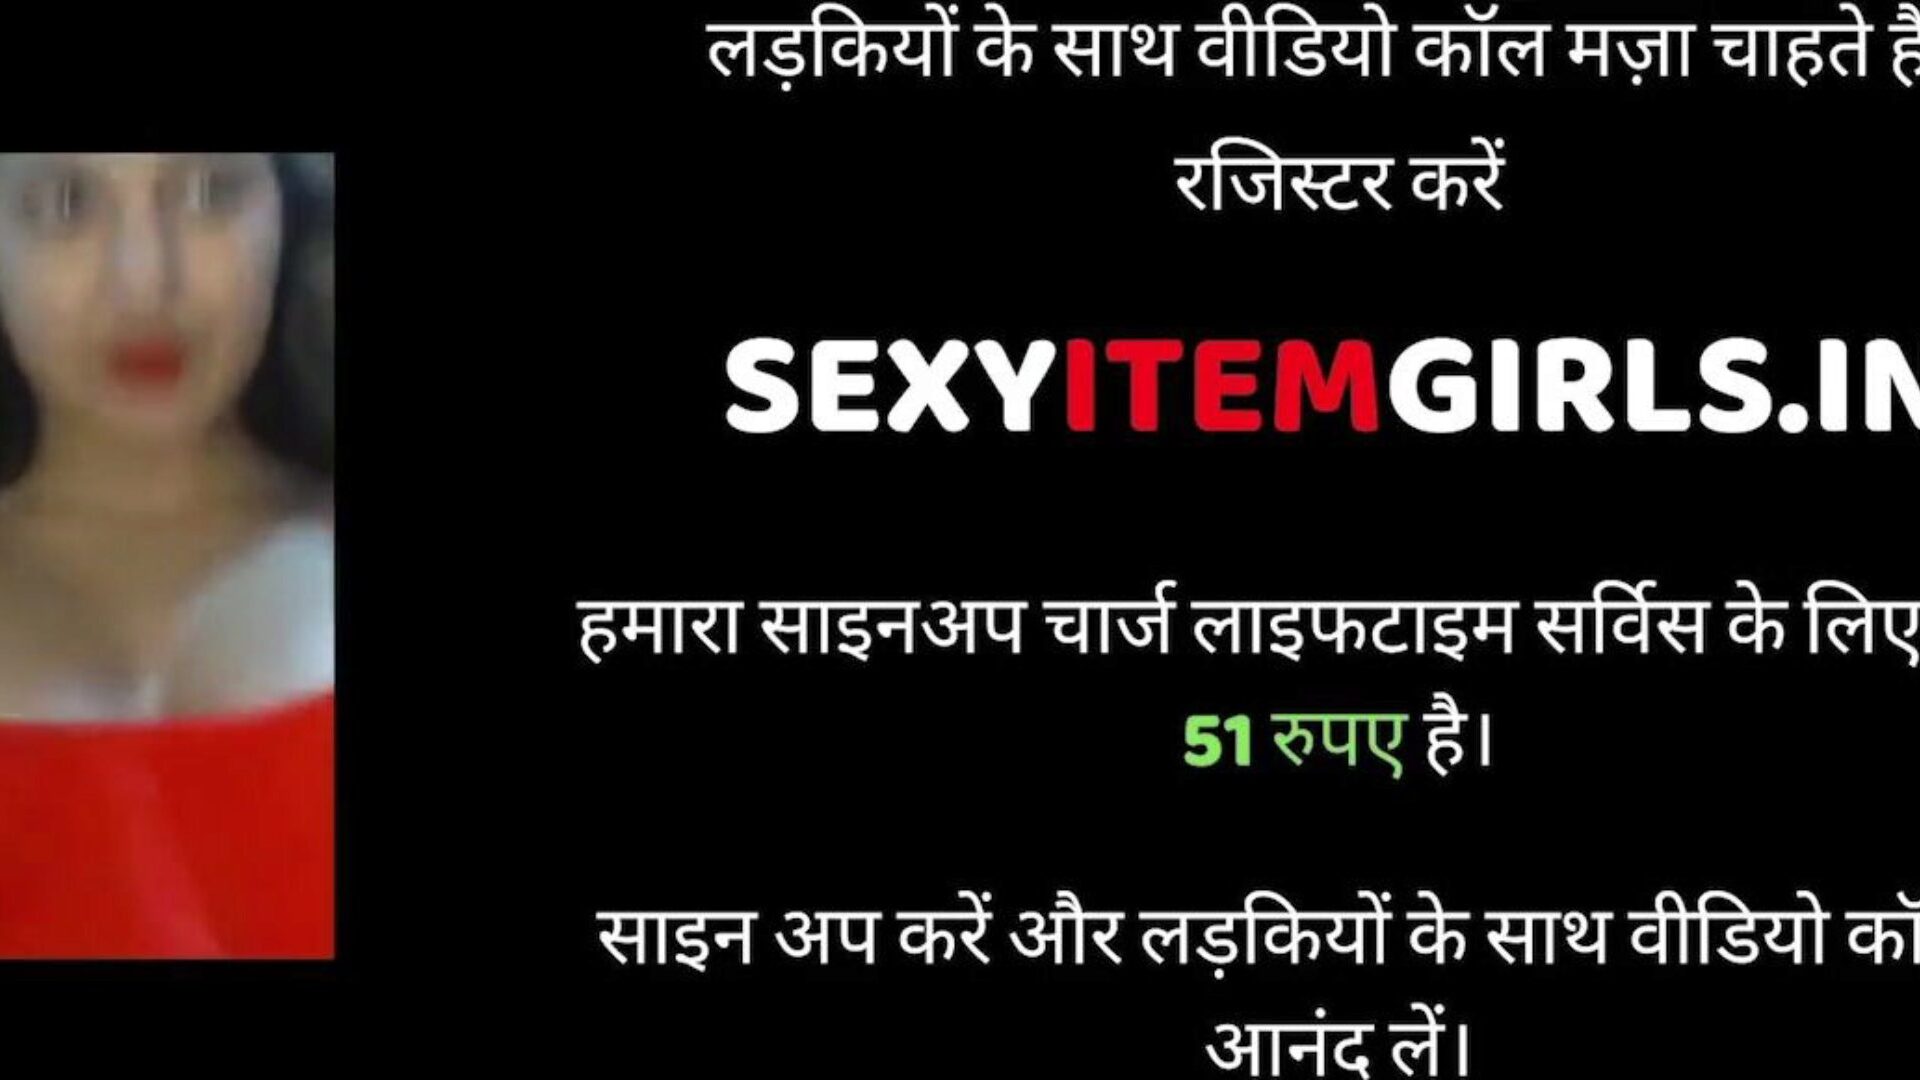 intialainen aviomies & vaimo sukupuoli, vapaa sukupuoli xnxx porn 95: xhamster katsella intialainen aviomies ja vaimo seksi video xhamsterissa, lihavin HD-hump-putkisivusto, jossa on tonnia vapaata sukupuolta olevia xnxx hardcore- ja cum-pussy-pornofilmejä